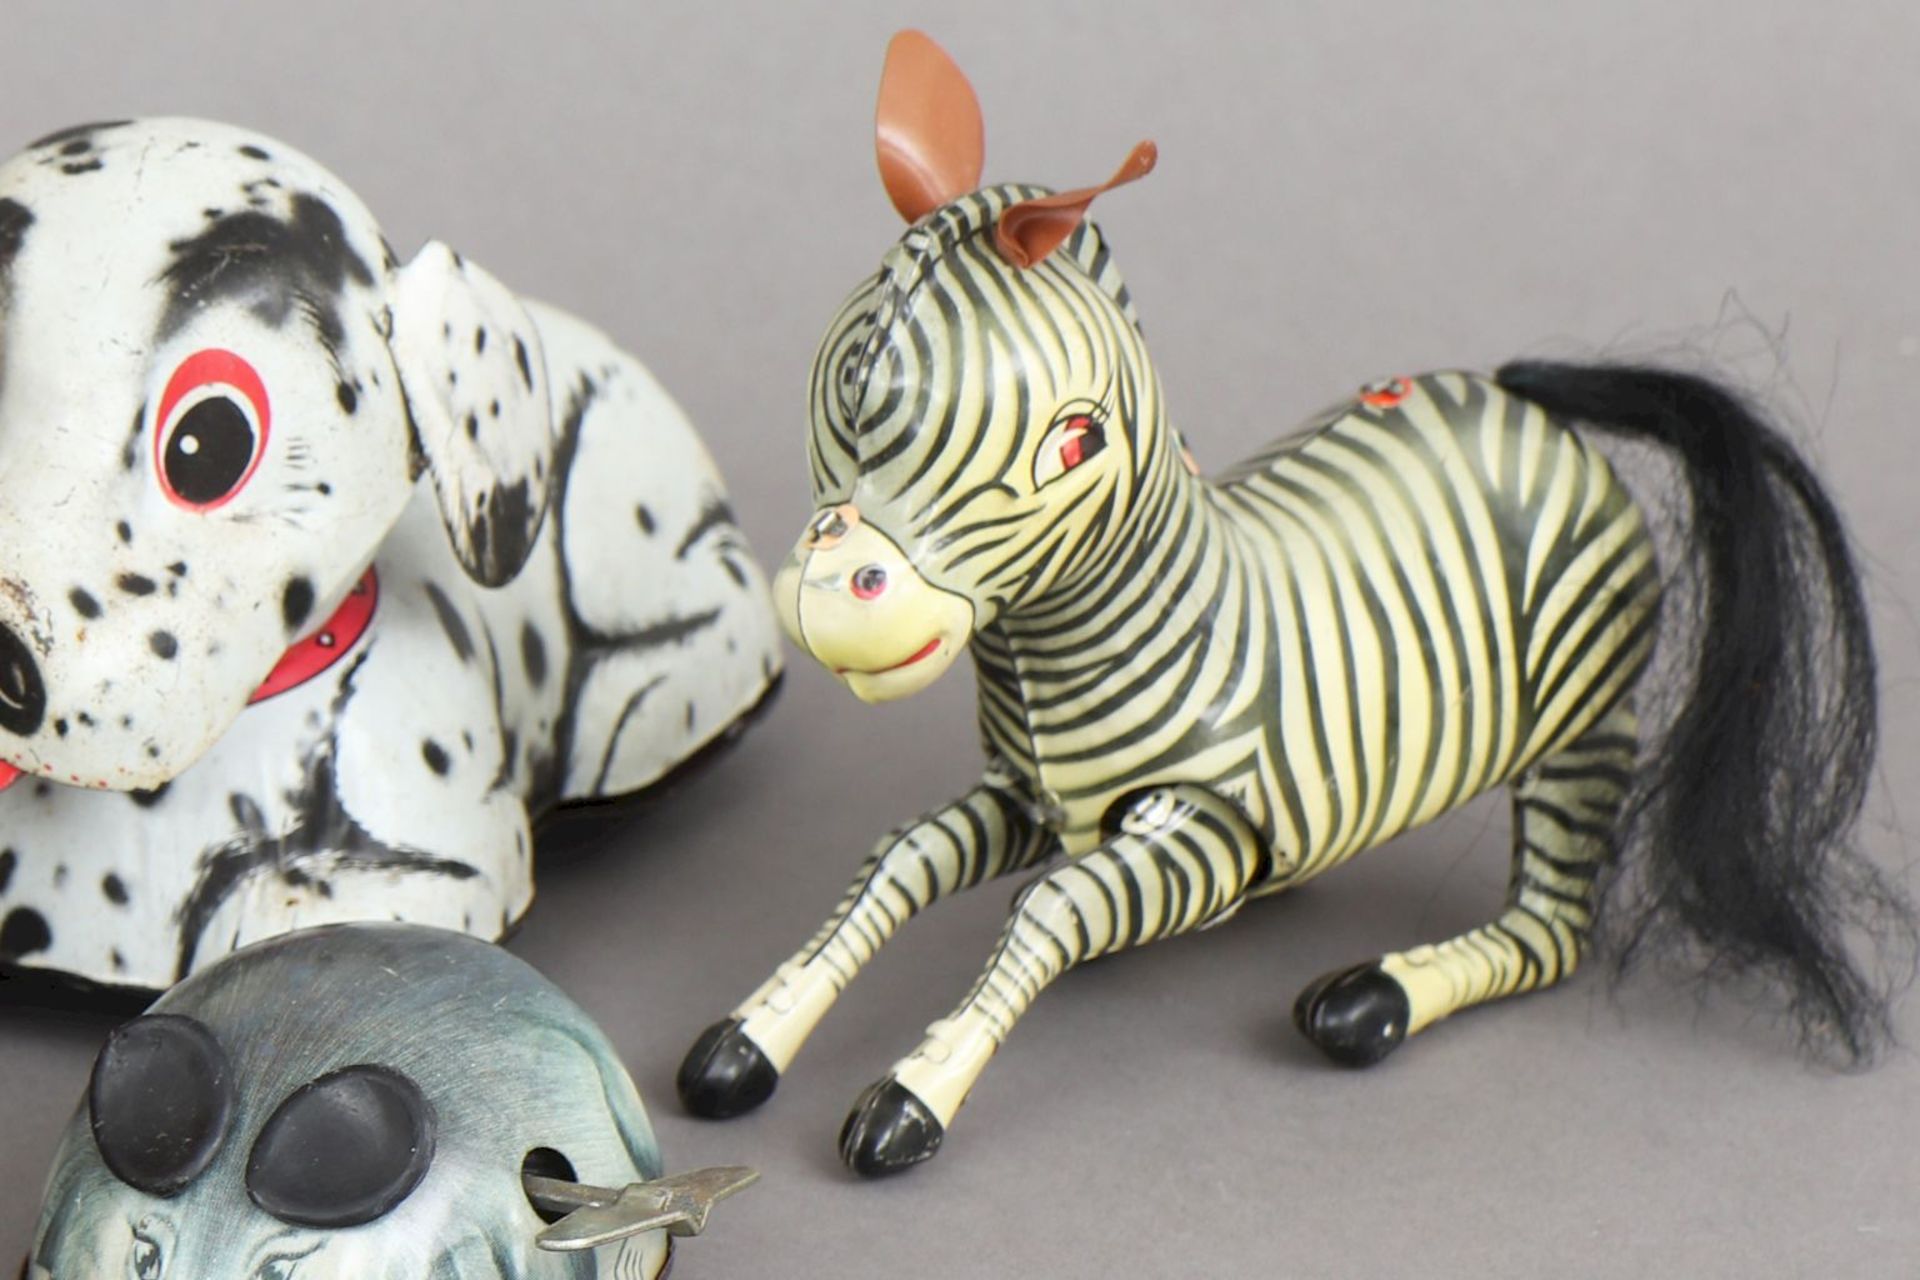 5 Teile Blechspielzeugdiverse Tiere (Krokodil, Zebra, Pferd, Maus und Hund), diverse Epochen un - Image 3 of 3